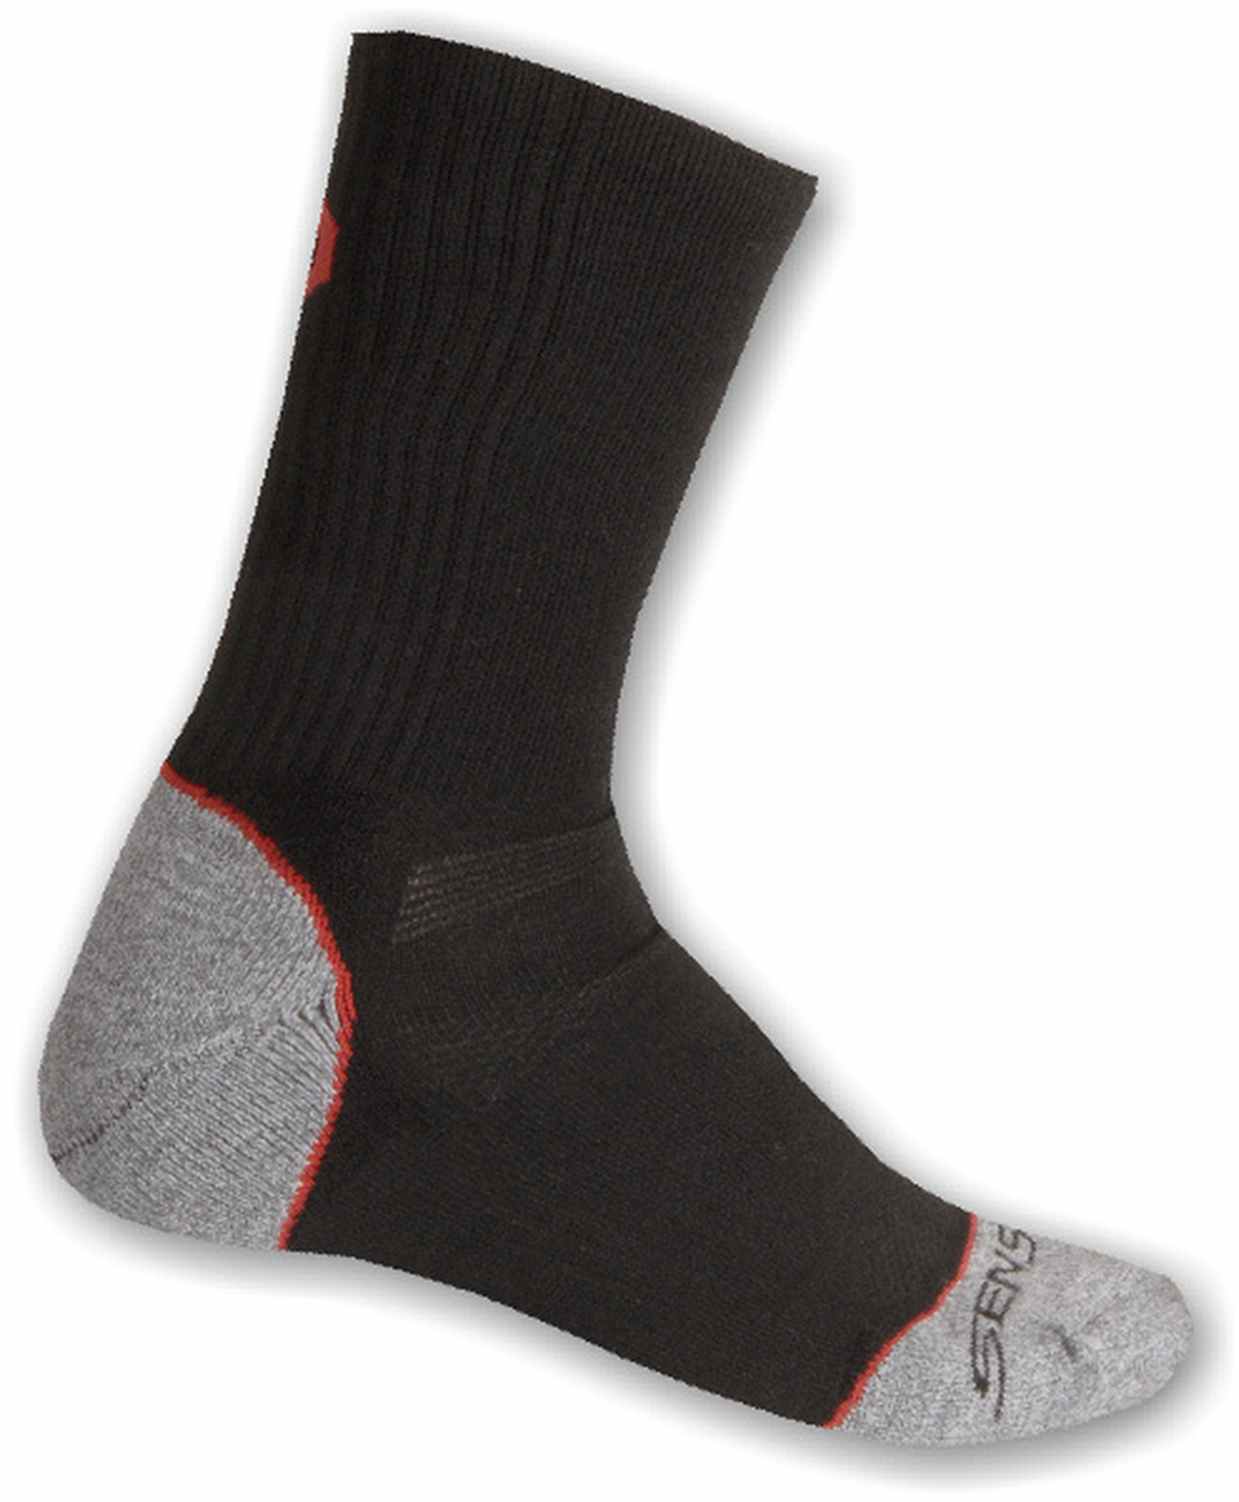 Funkční ponožky